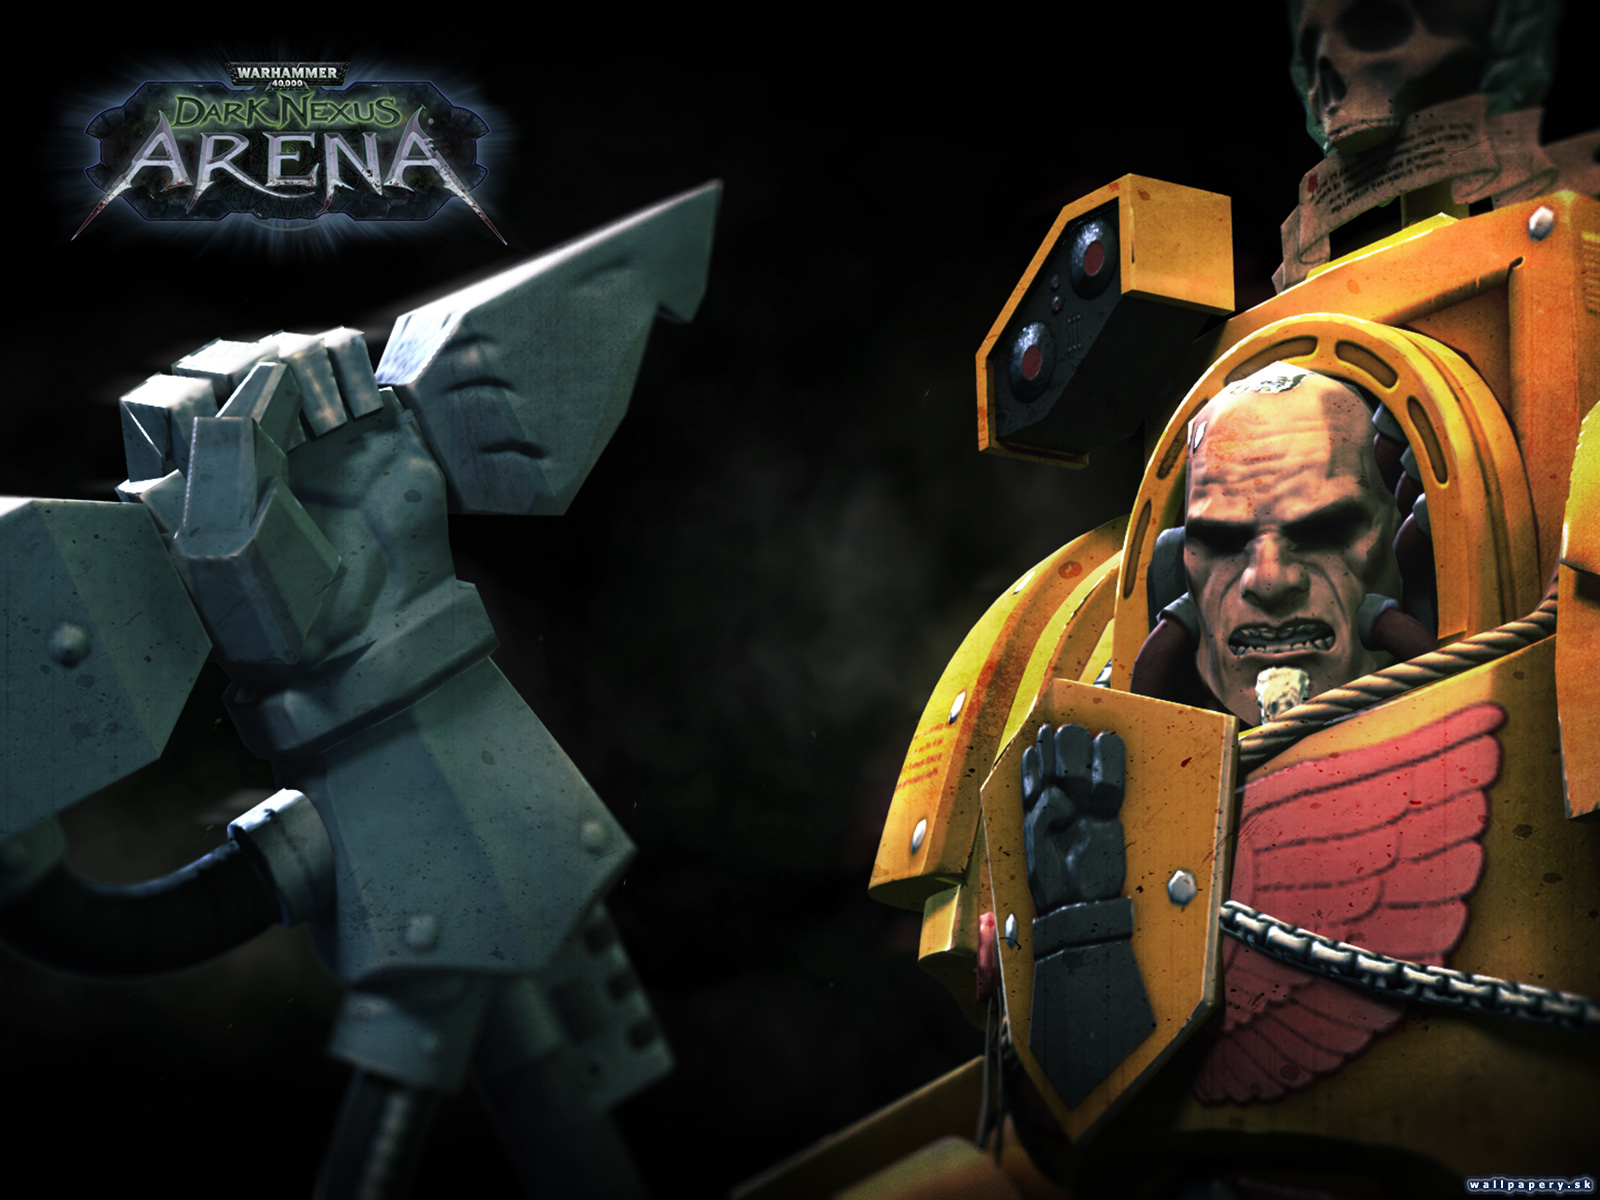 Warhammer 40,000: Dark Nexus Arena - wallpaper 1